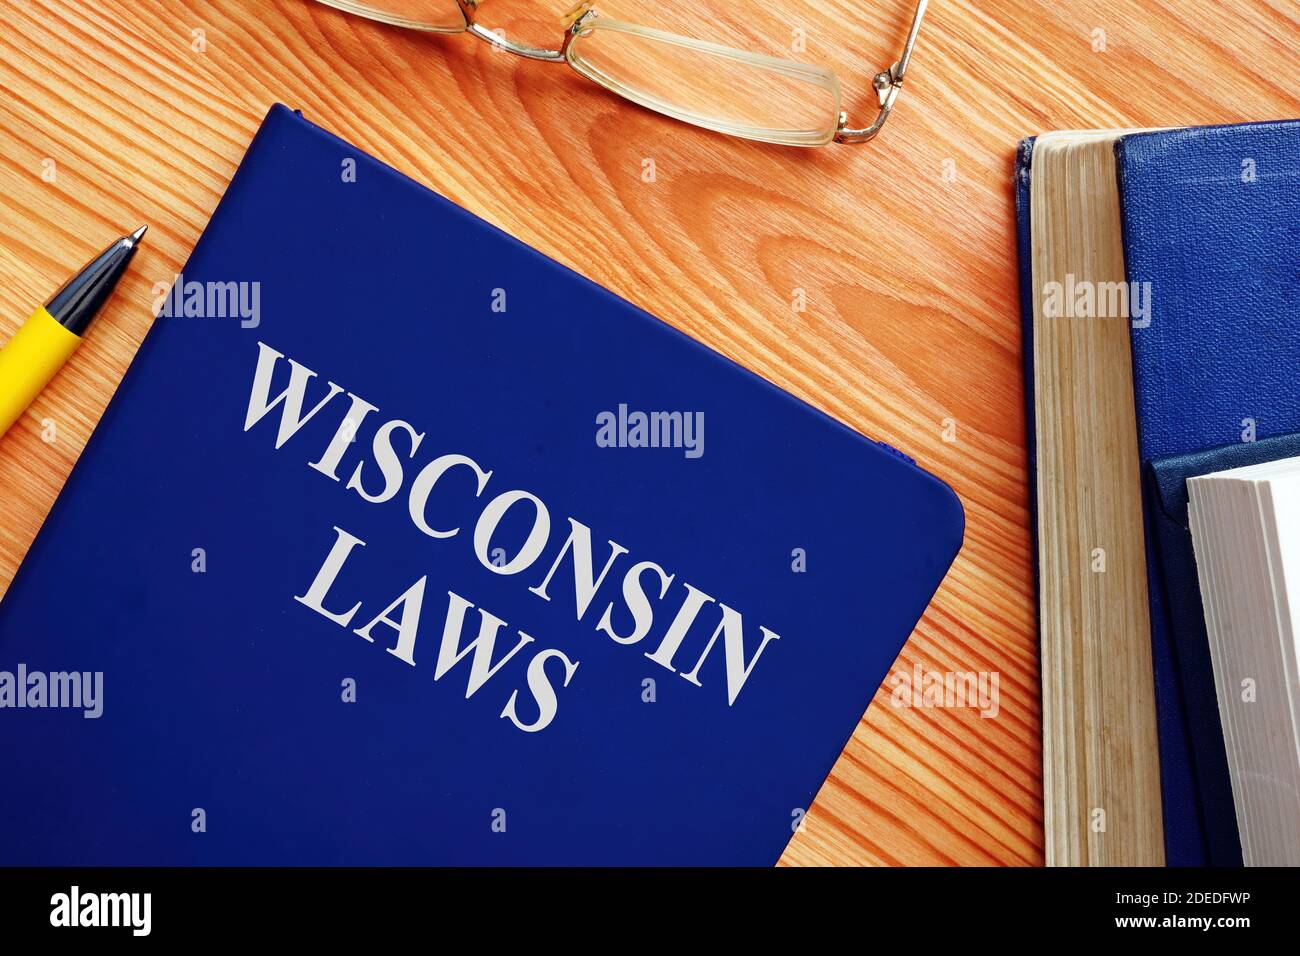 Prenota con la legge del Wisconsin sul tavolo. Foto Stock